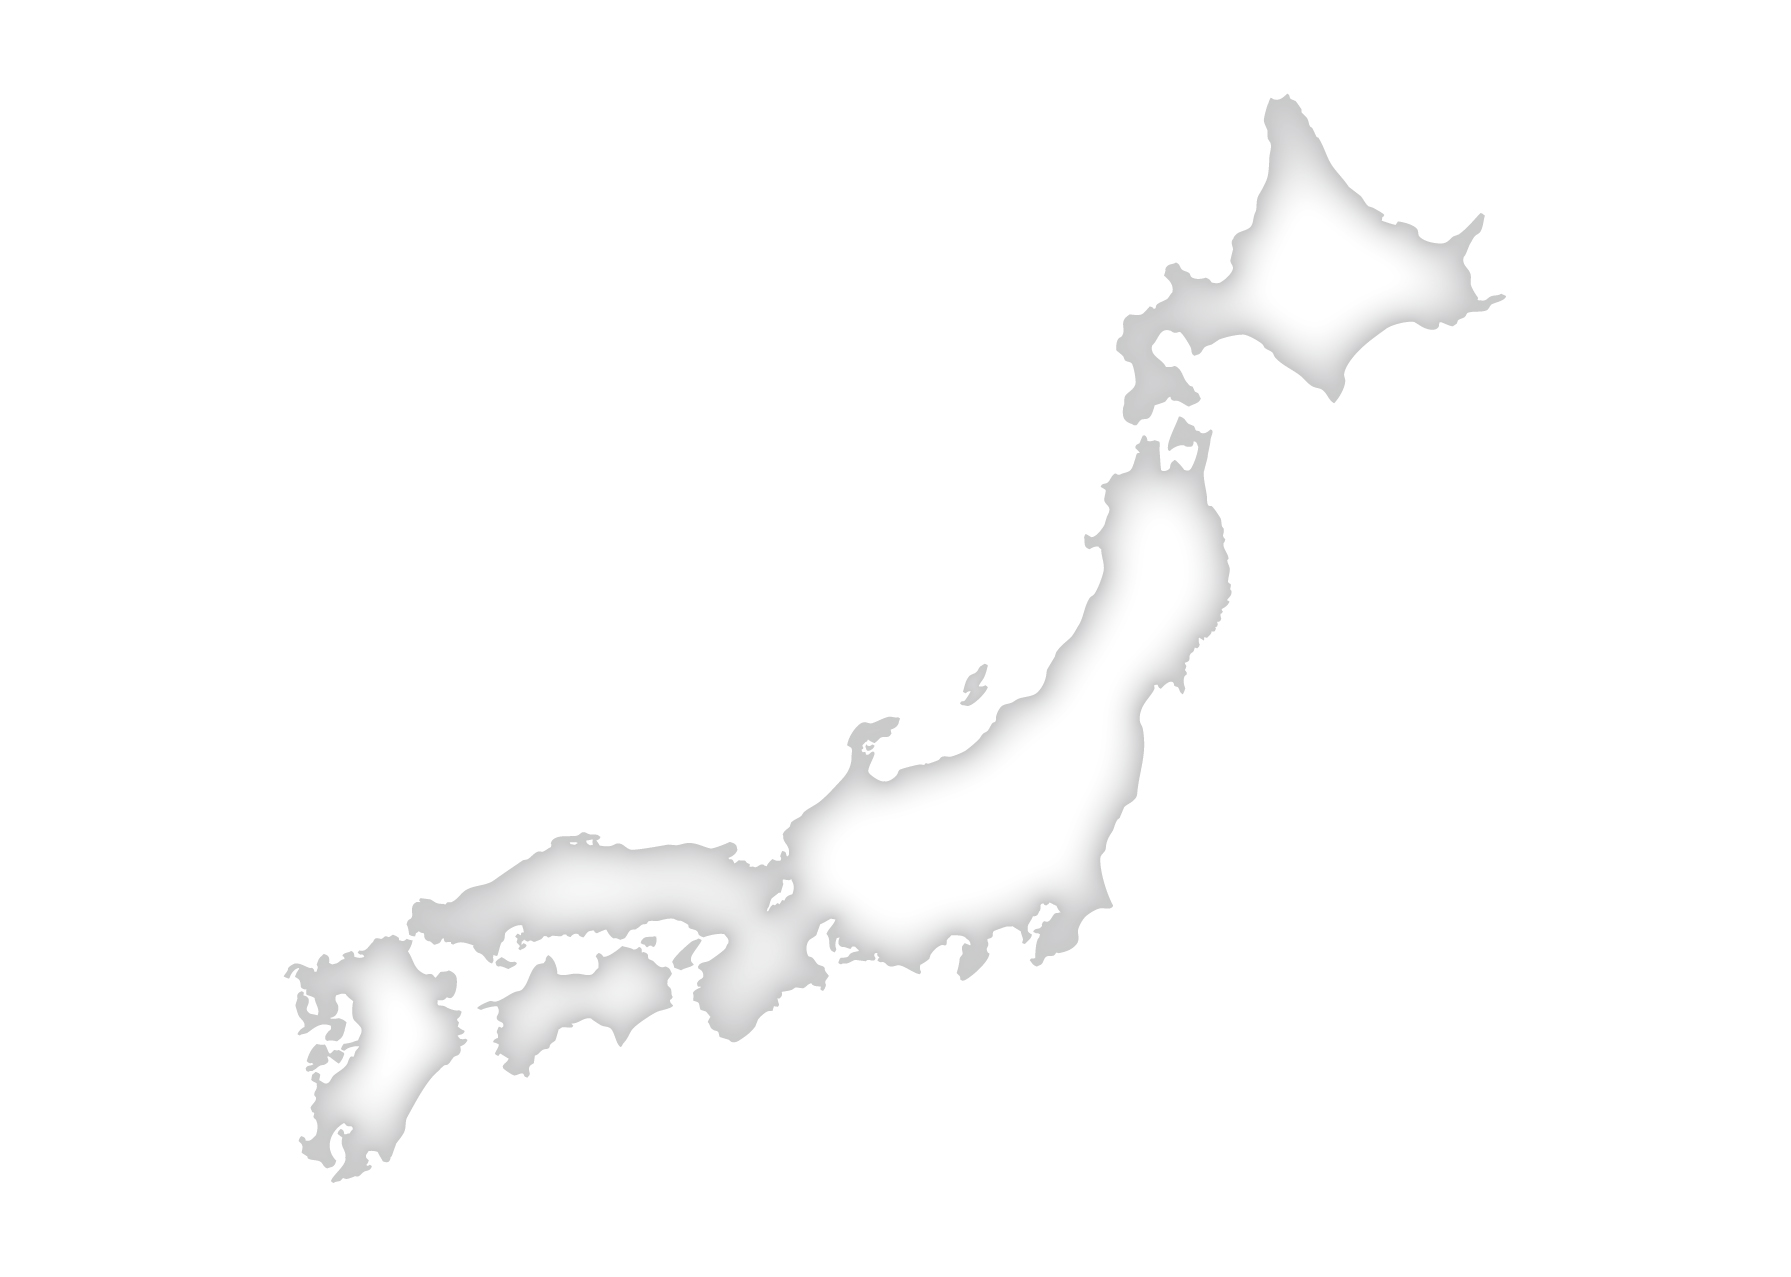 日本地図無料フリーイラスト 文字なし 都道府県線なし 簡易 白